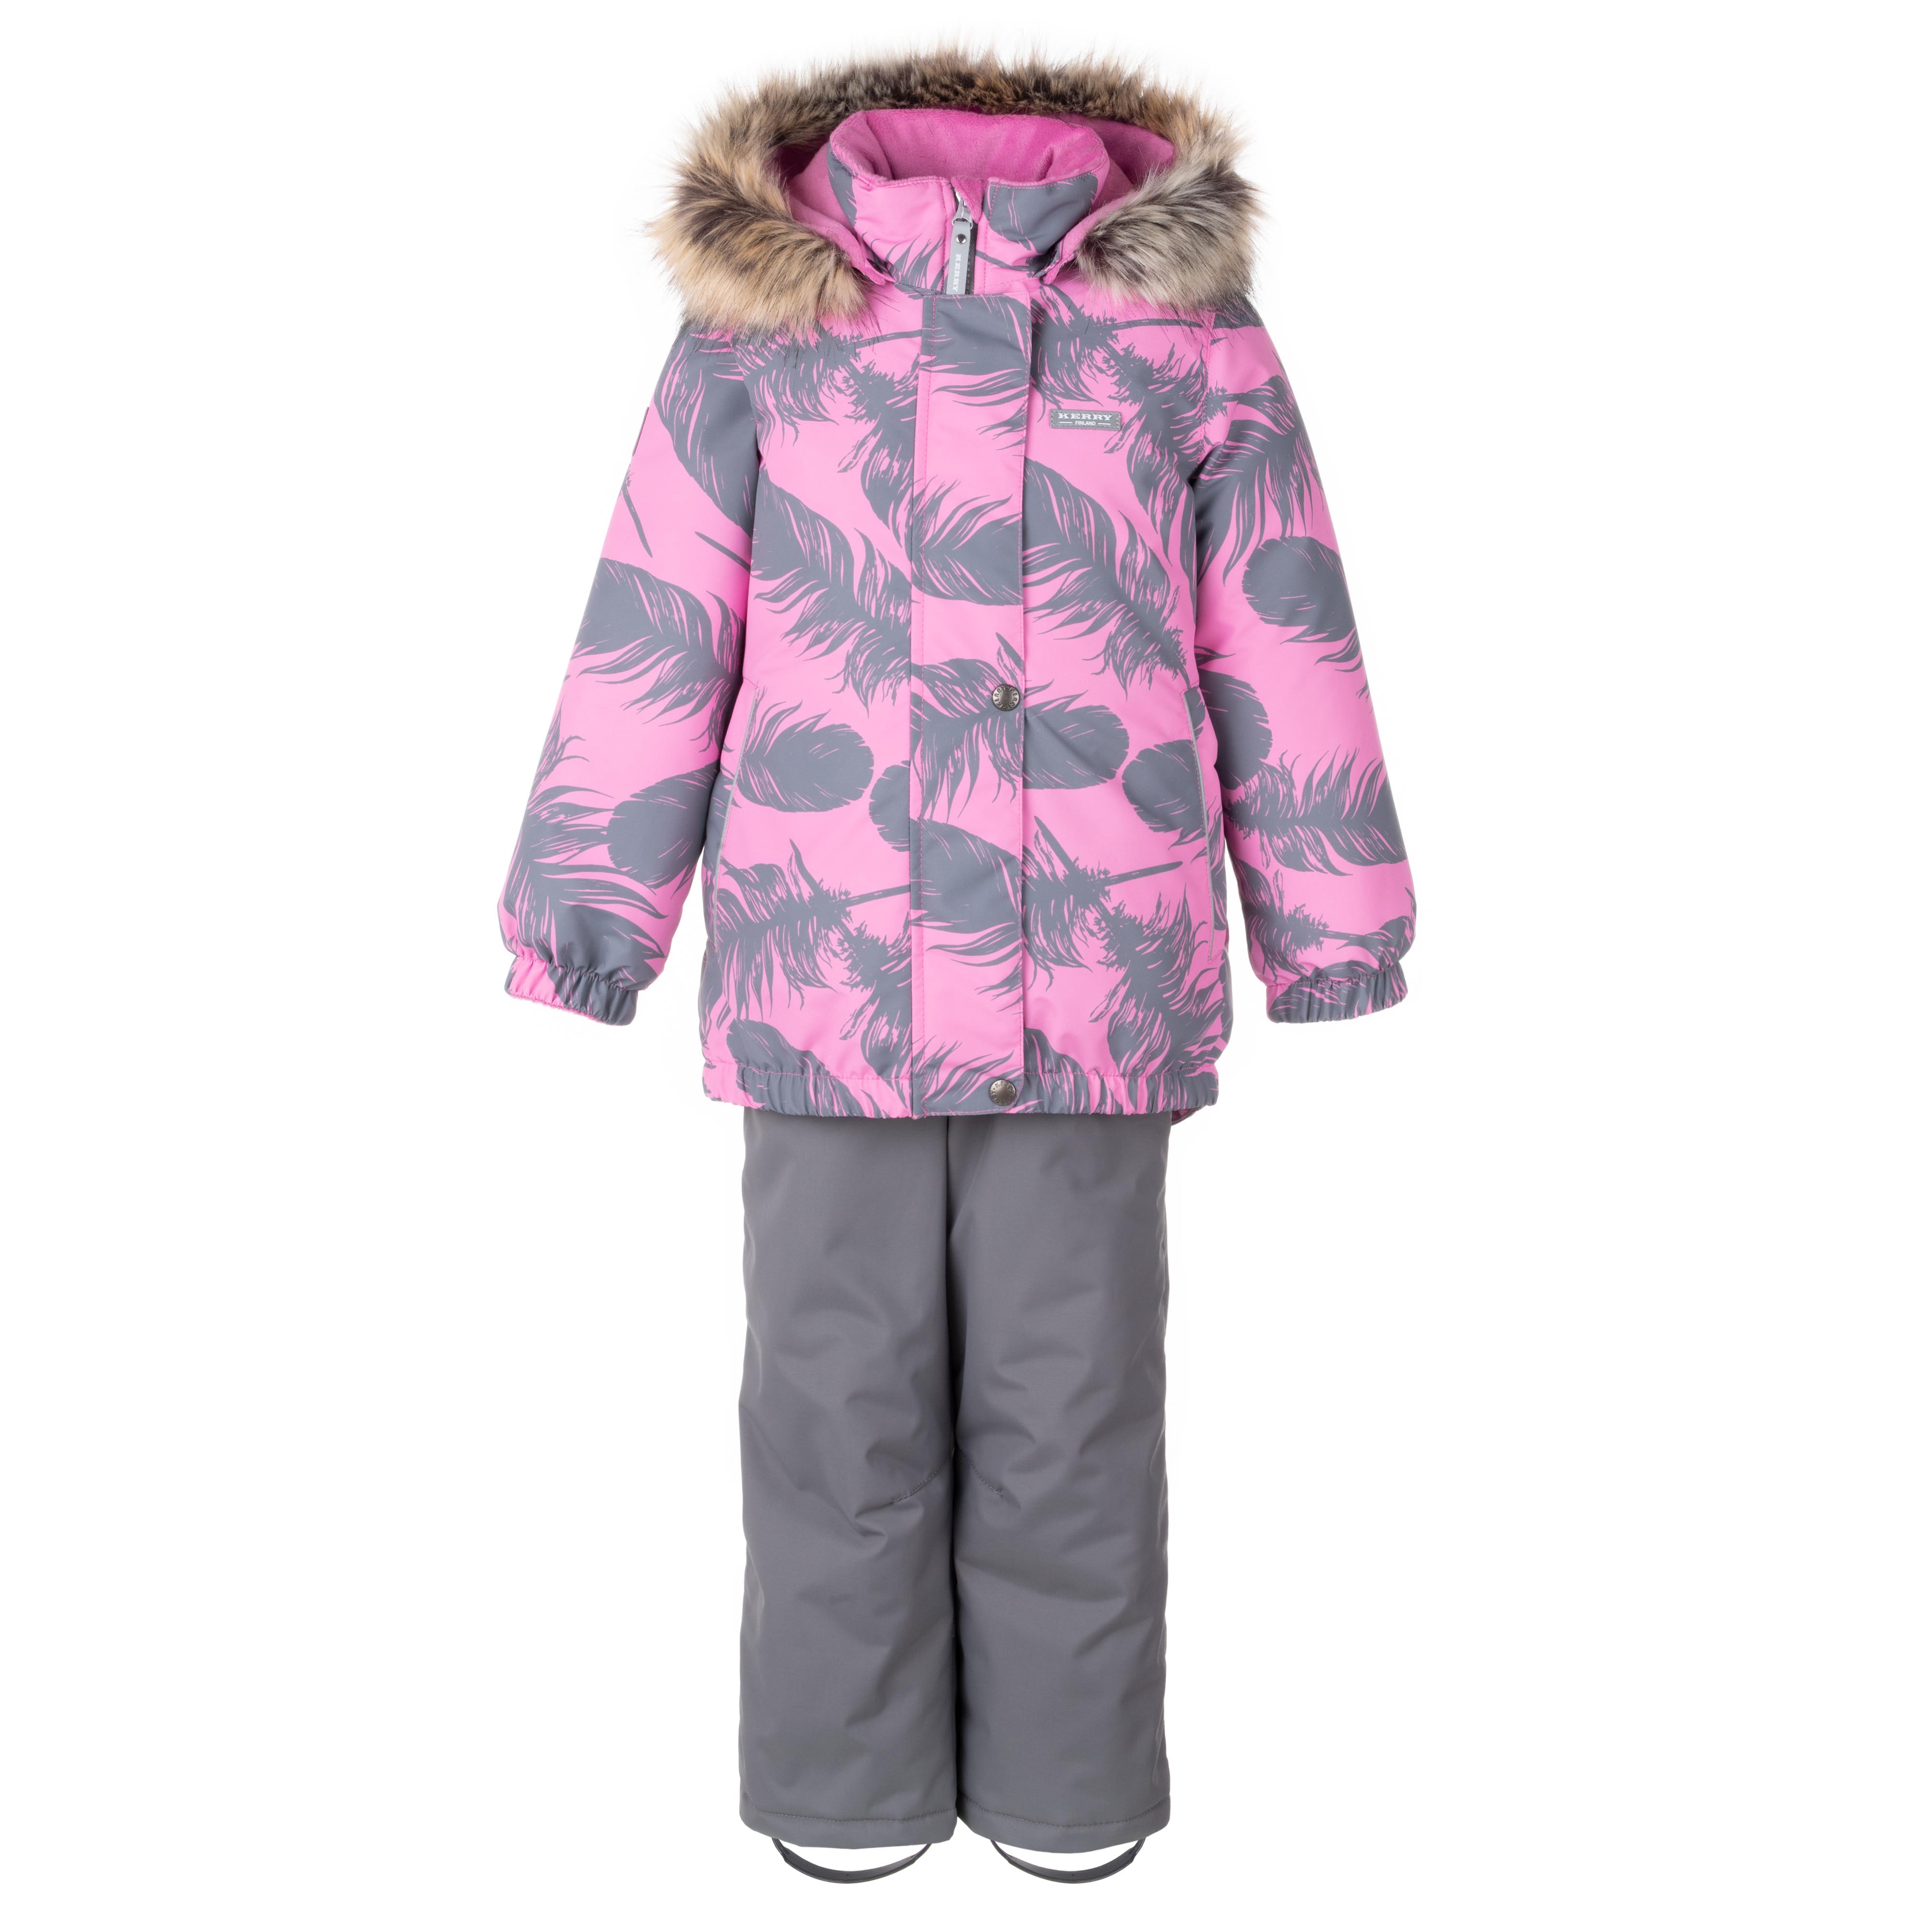 Комплект верхней одежды KERRY K23420 A, серый, розовый, 110